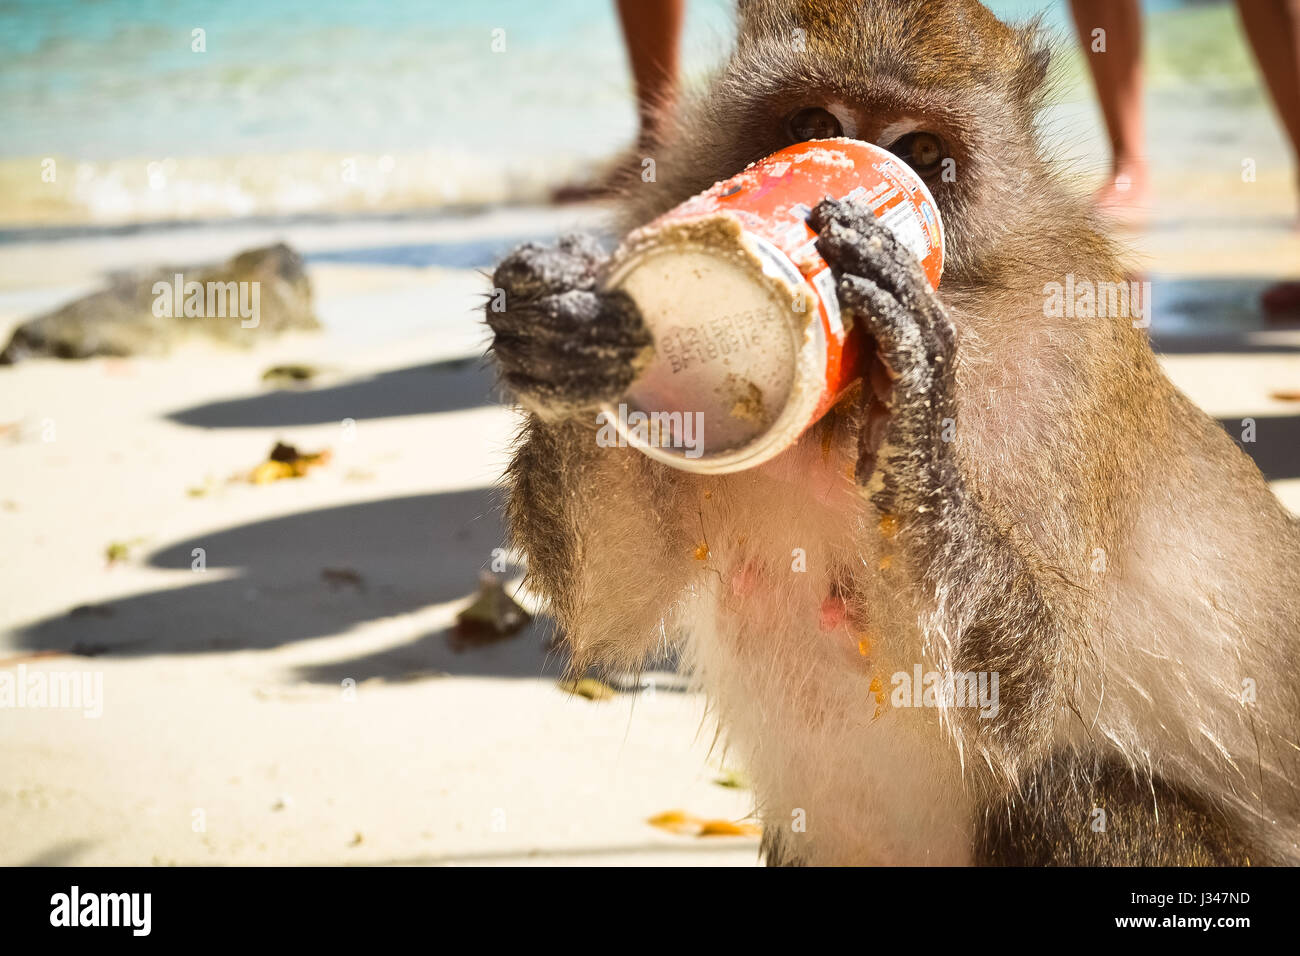 Giocoso wild monkey veramente sete bevendo soda in Monkey Island a Phuket, Tailandia. La modellazione della fauna selvatica come una persona citadine. Foto Stock